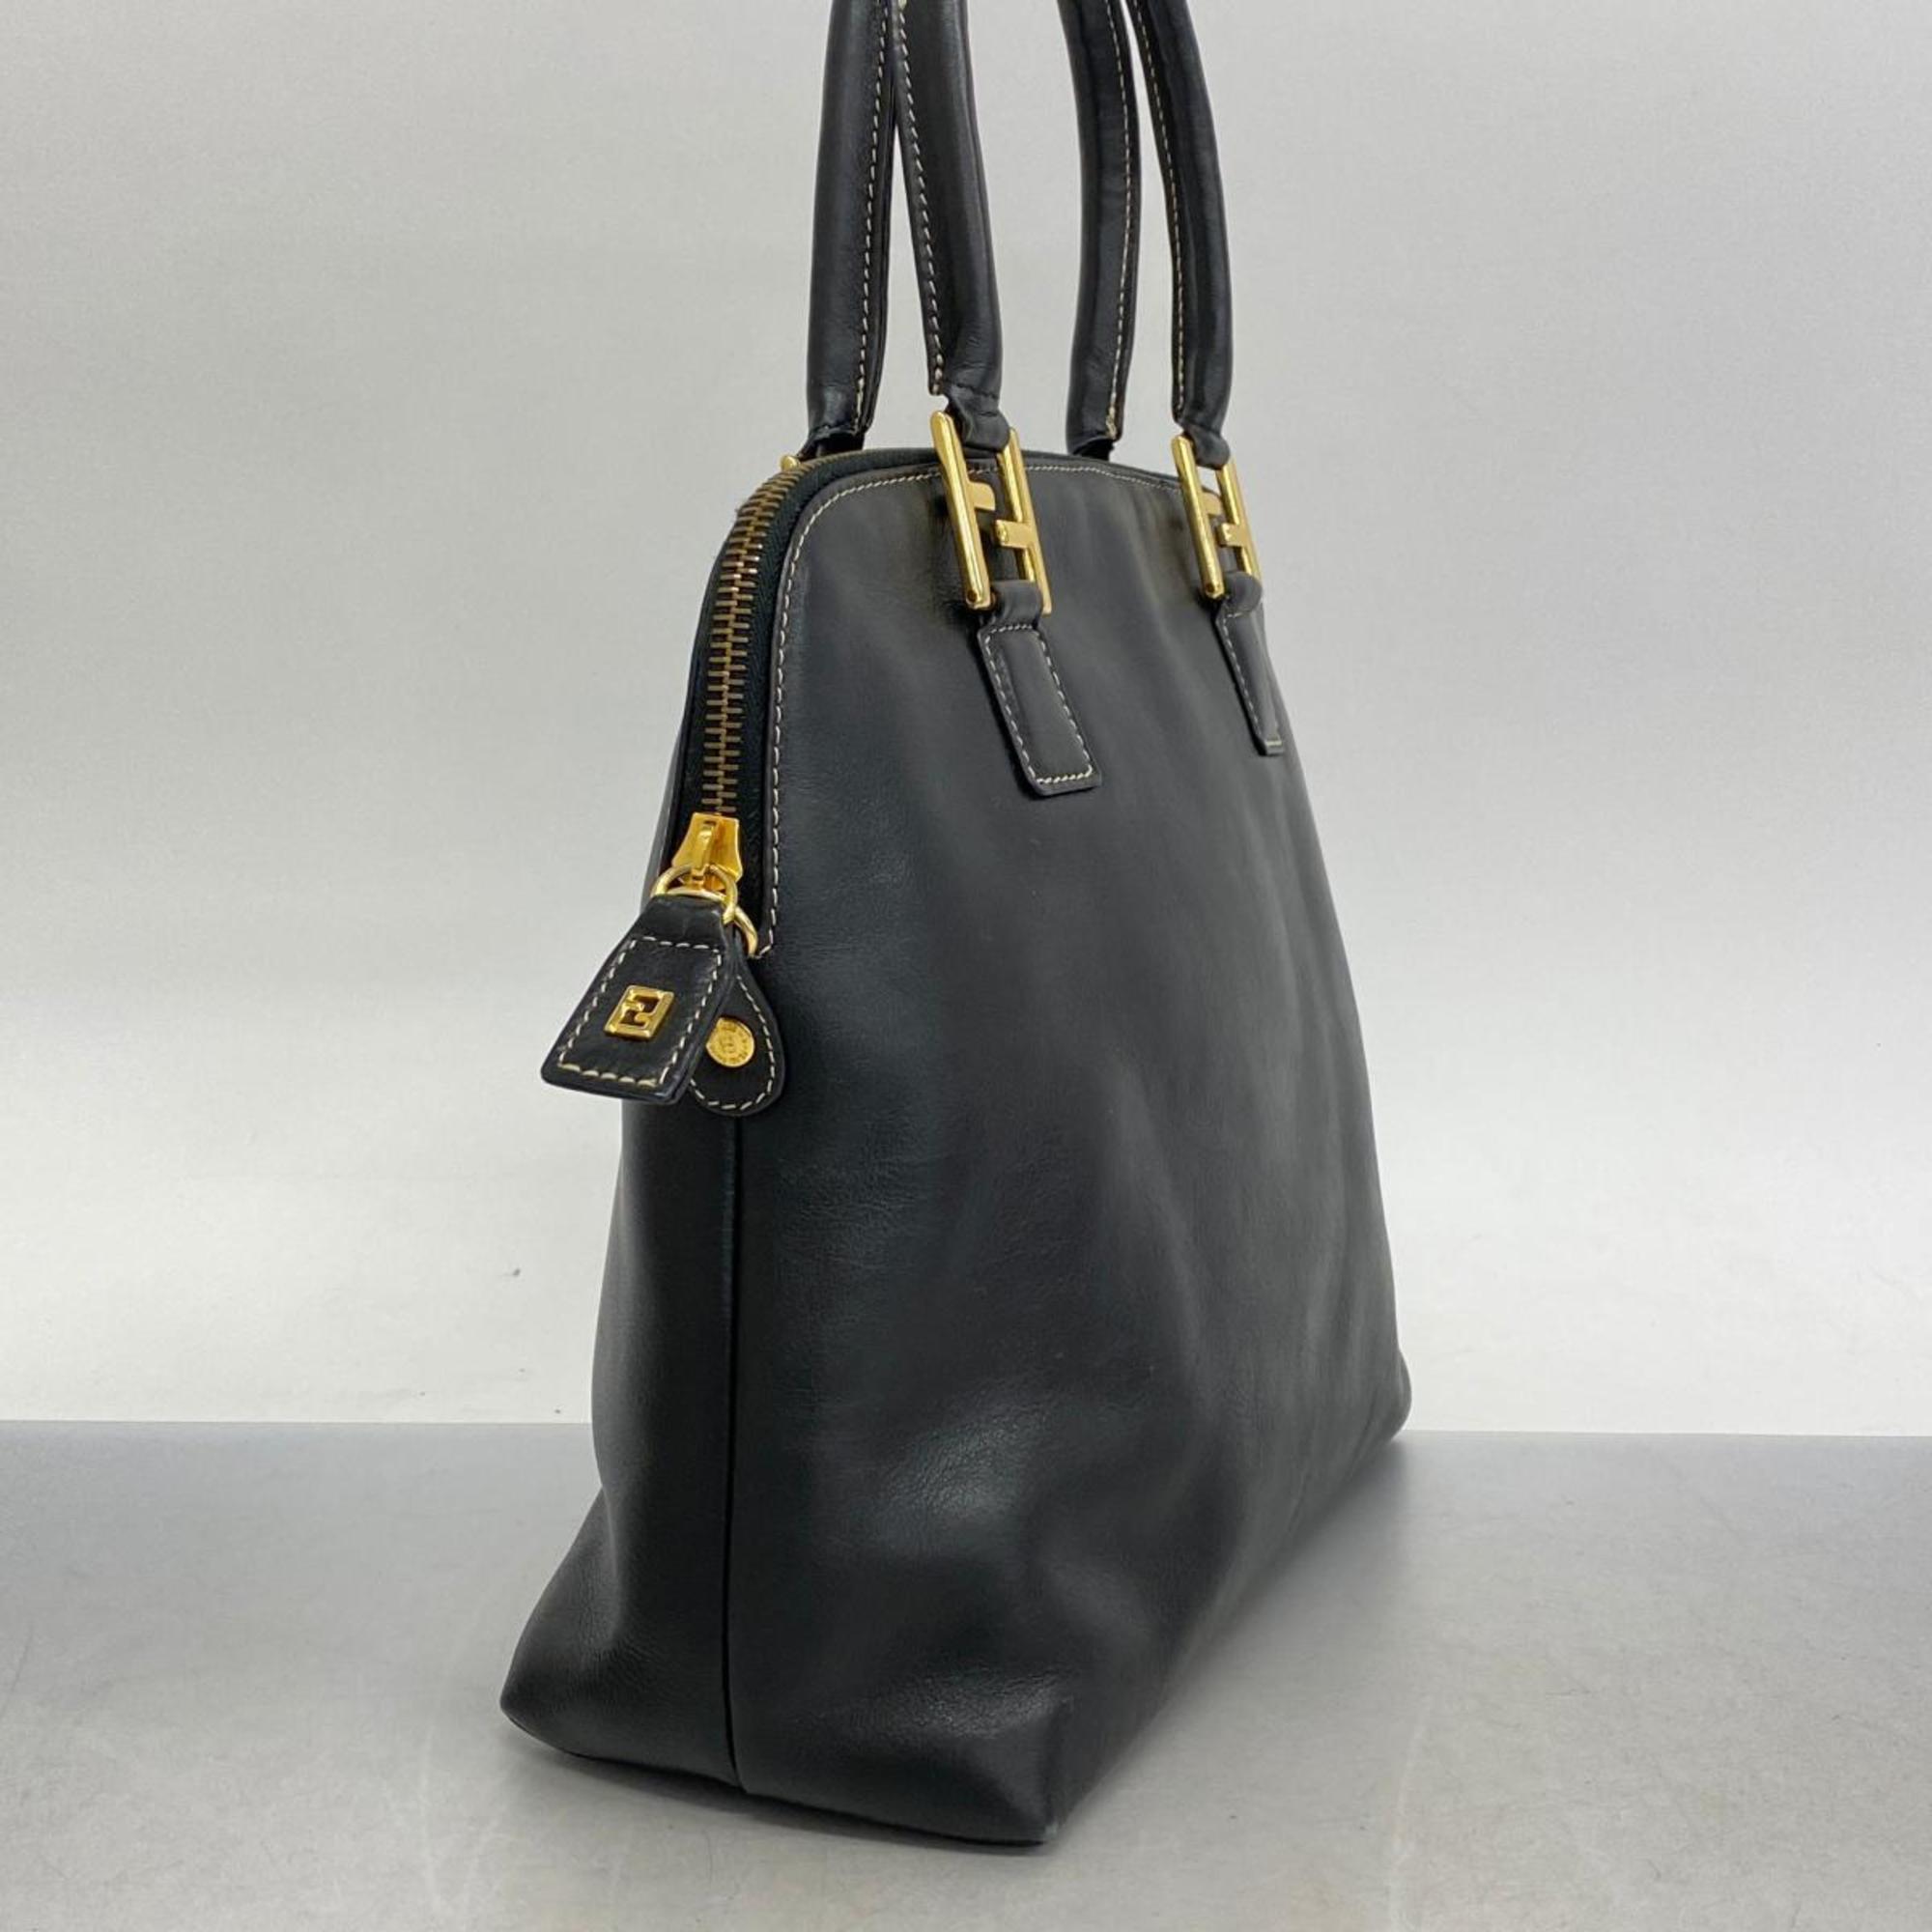 Fendi handbag leather black ladies